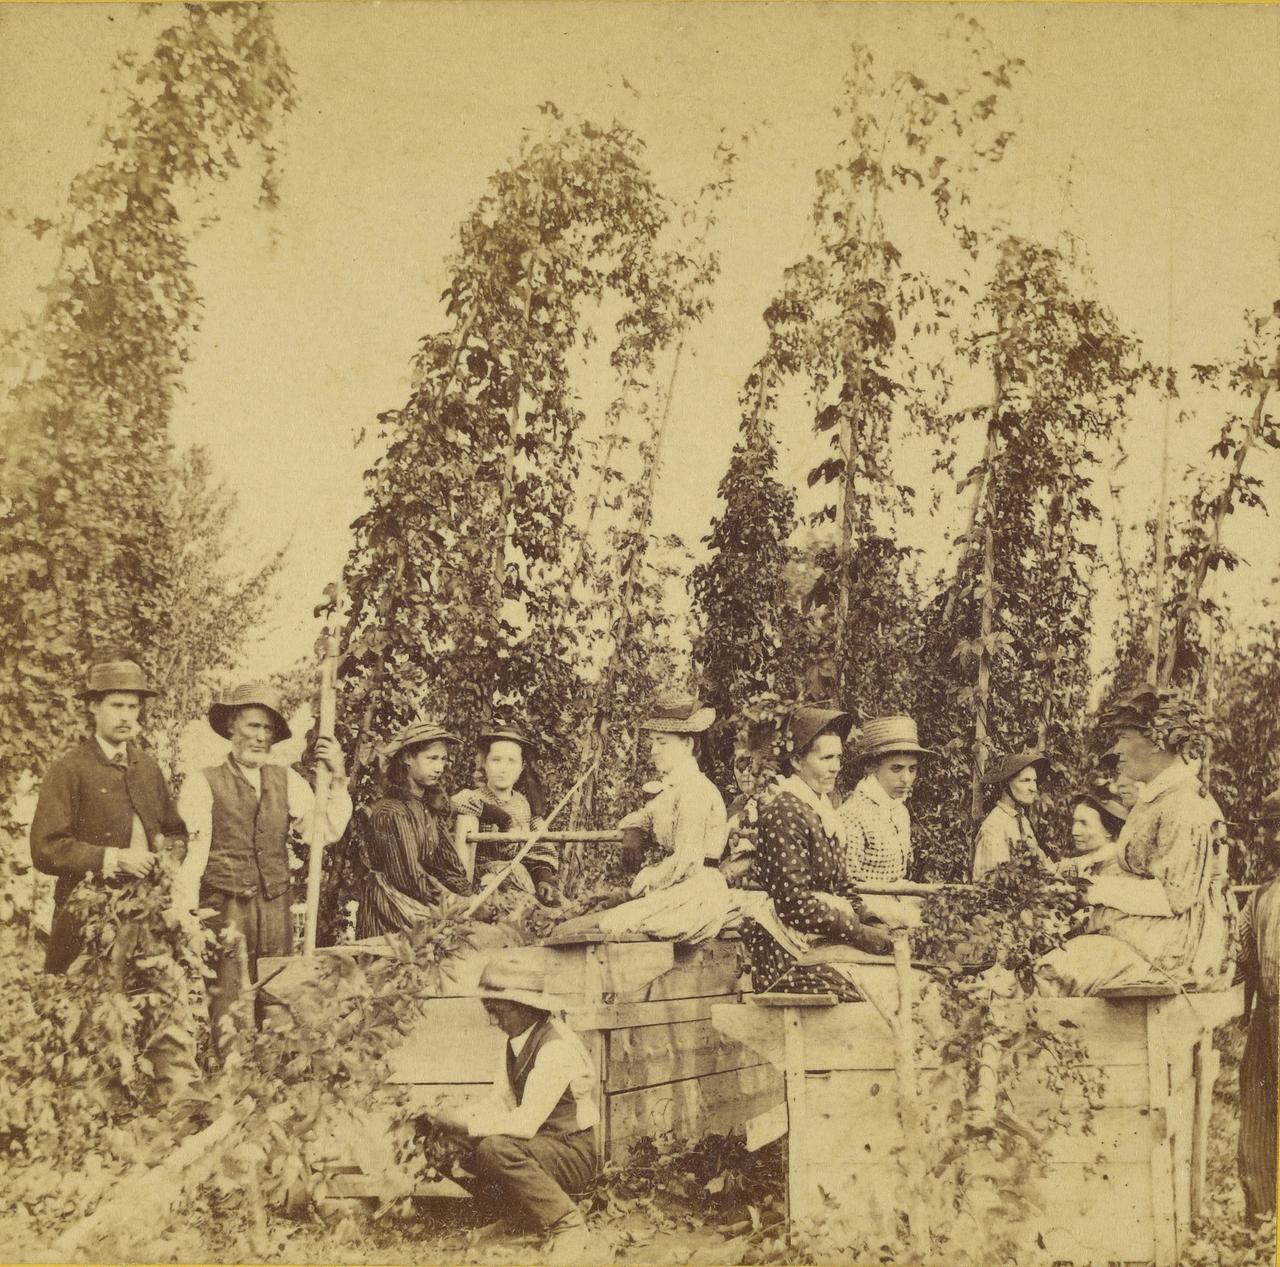 Historisches schwarzweiss Bild von Erntehelfern beim Hopfenpflücken, ca. 1870.